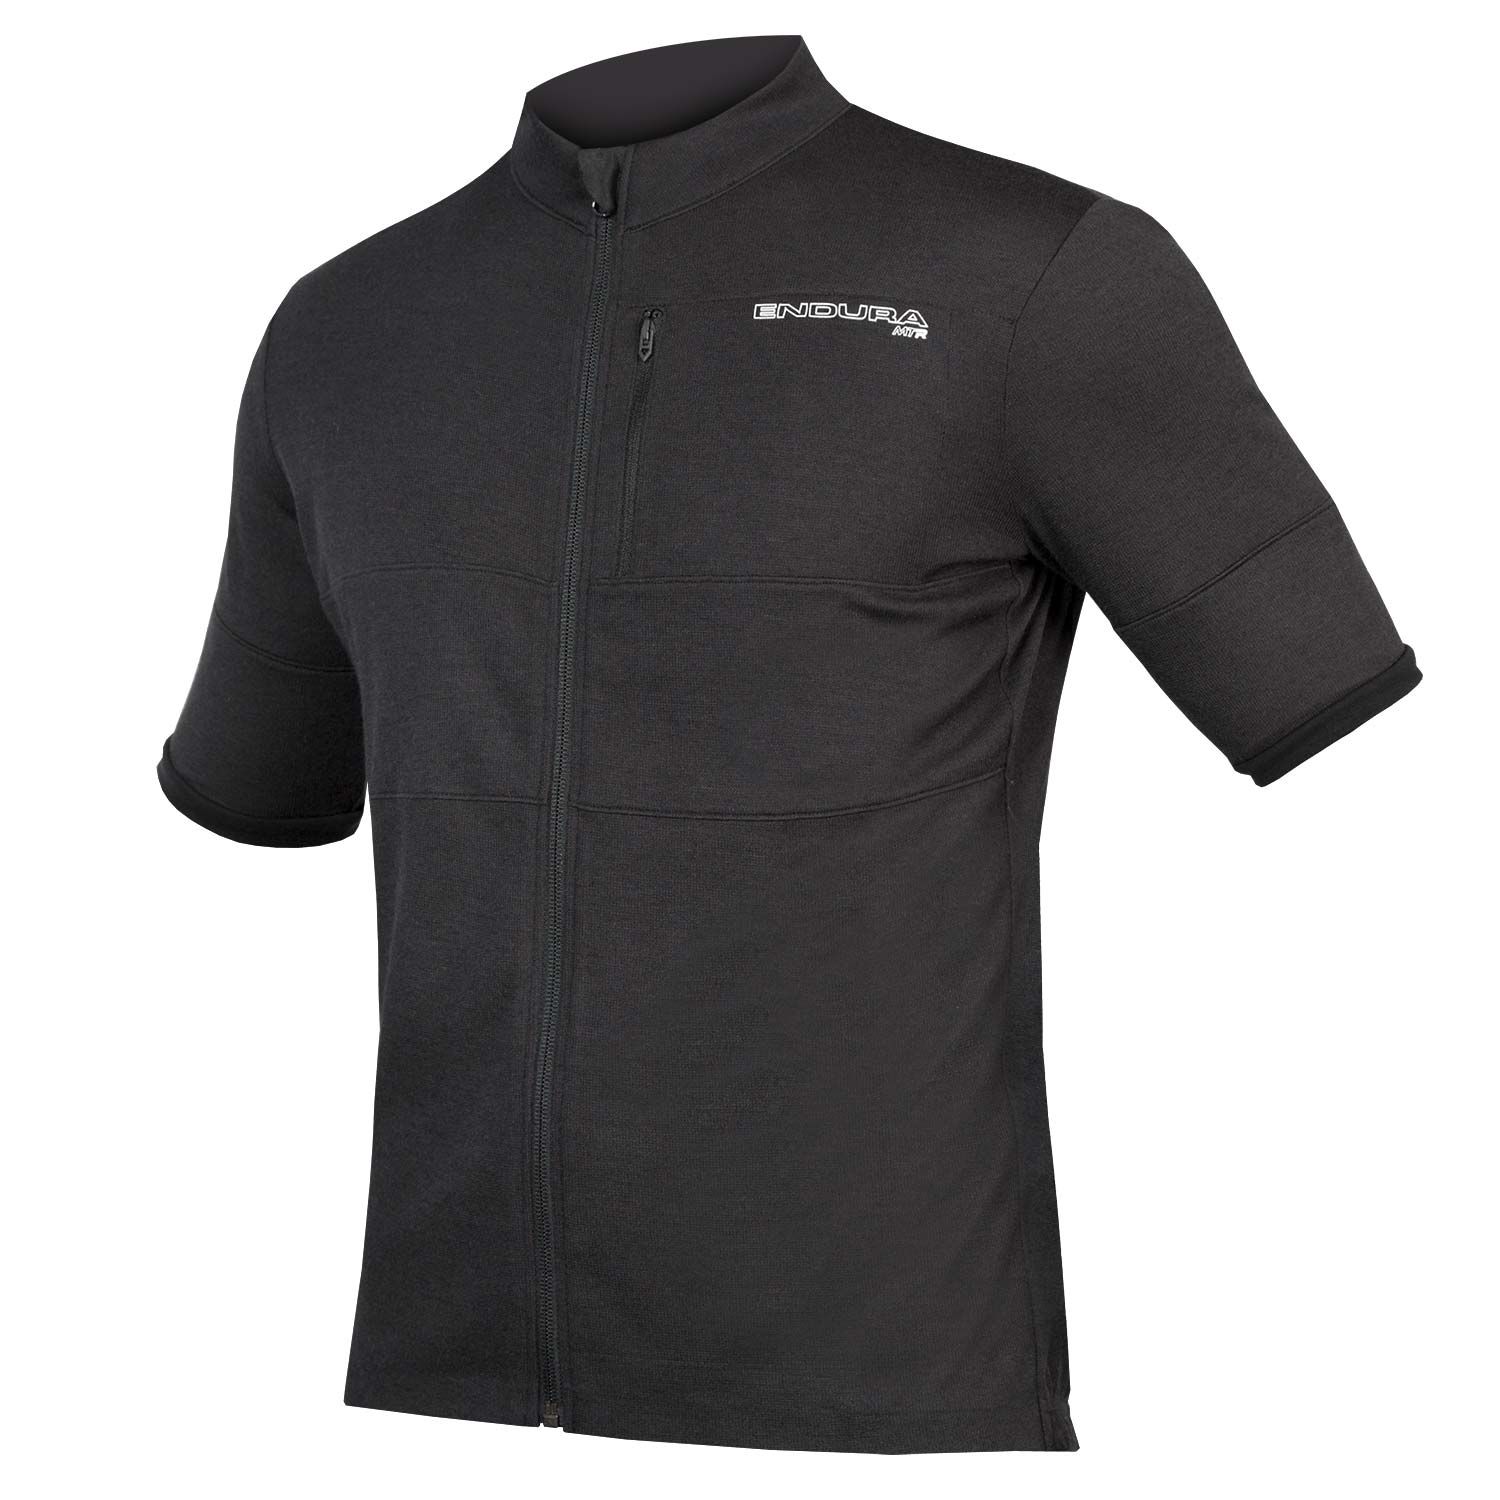 Endura Mtr Adventure Short Sleeve Jersey - £49.99 | Jerseys - Short ...